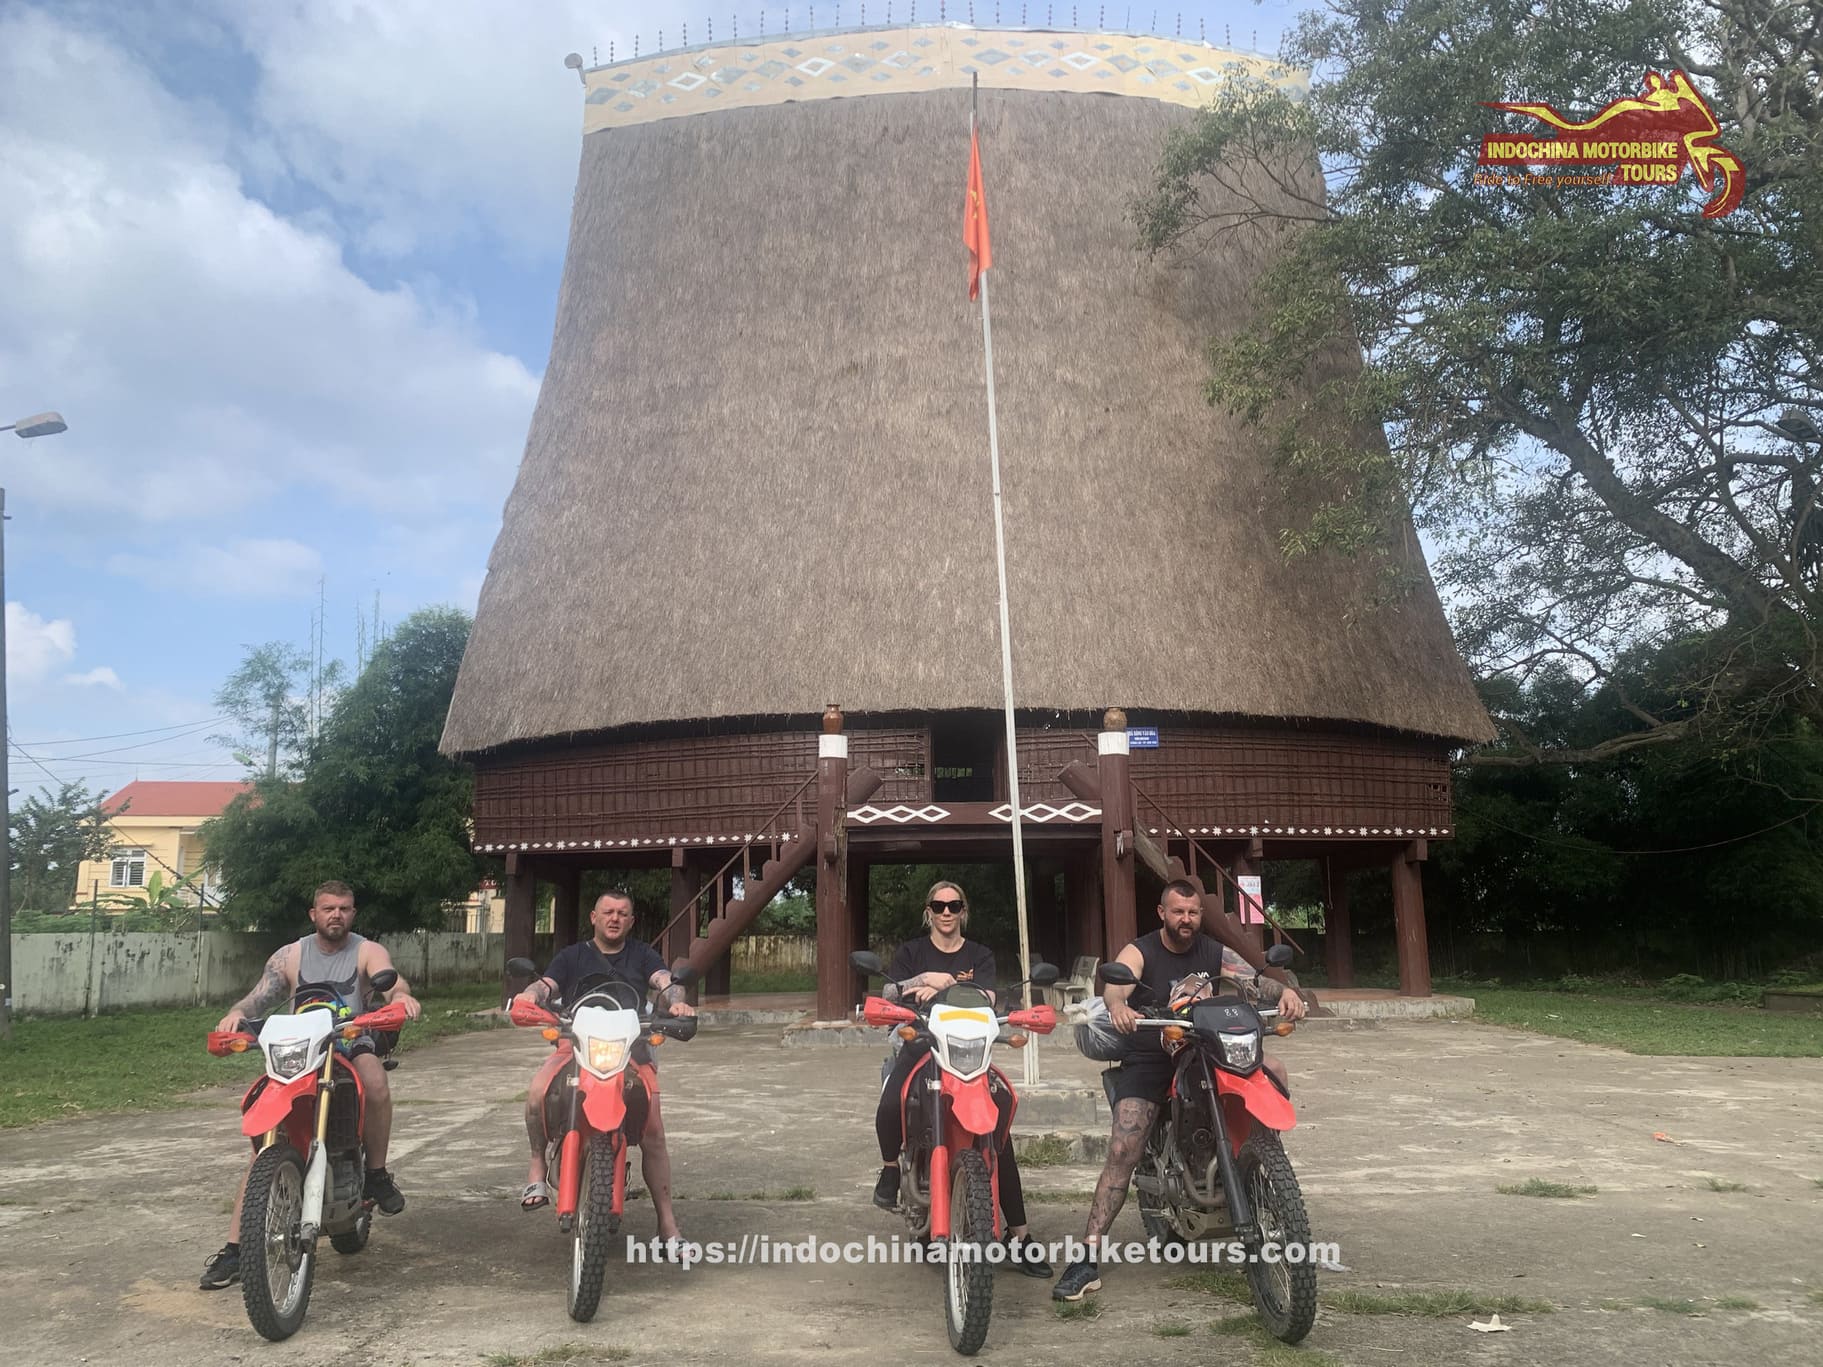 VIETNAM MOTORBIKE TOUR FROM HOI AN TO SAIGON VIA CENTRAL HIGHLANDS